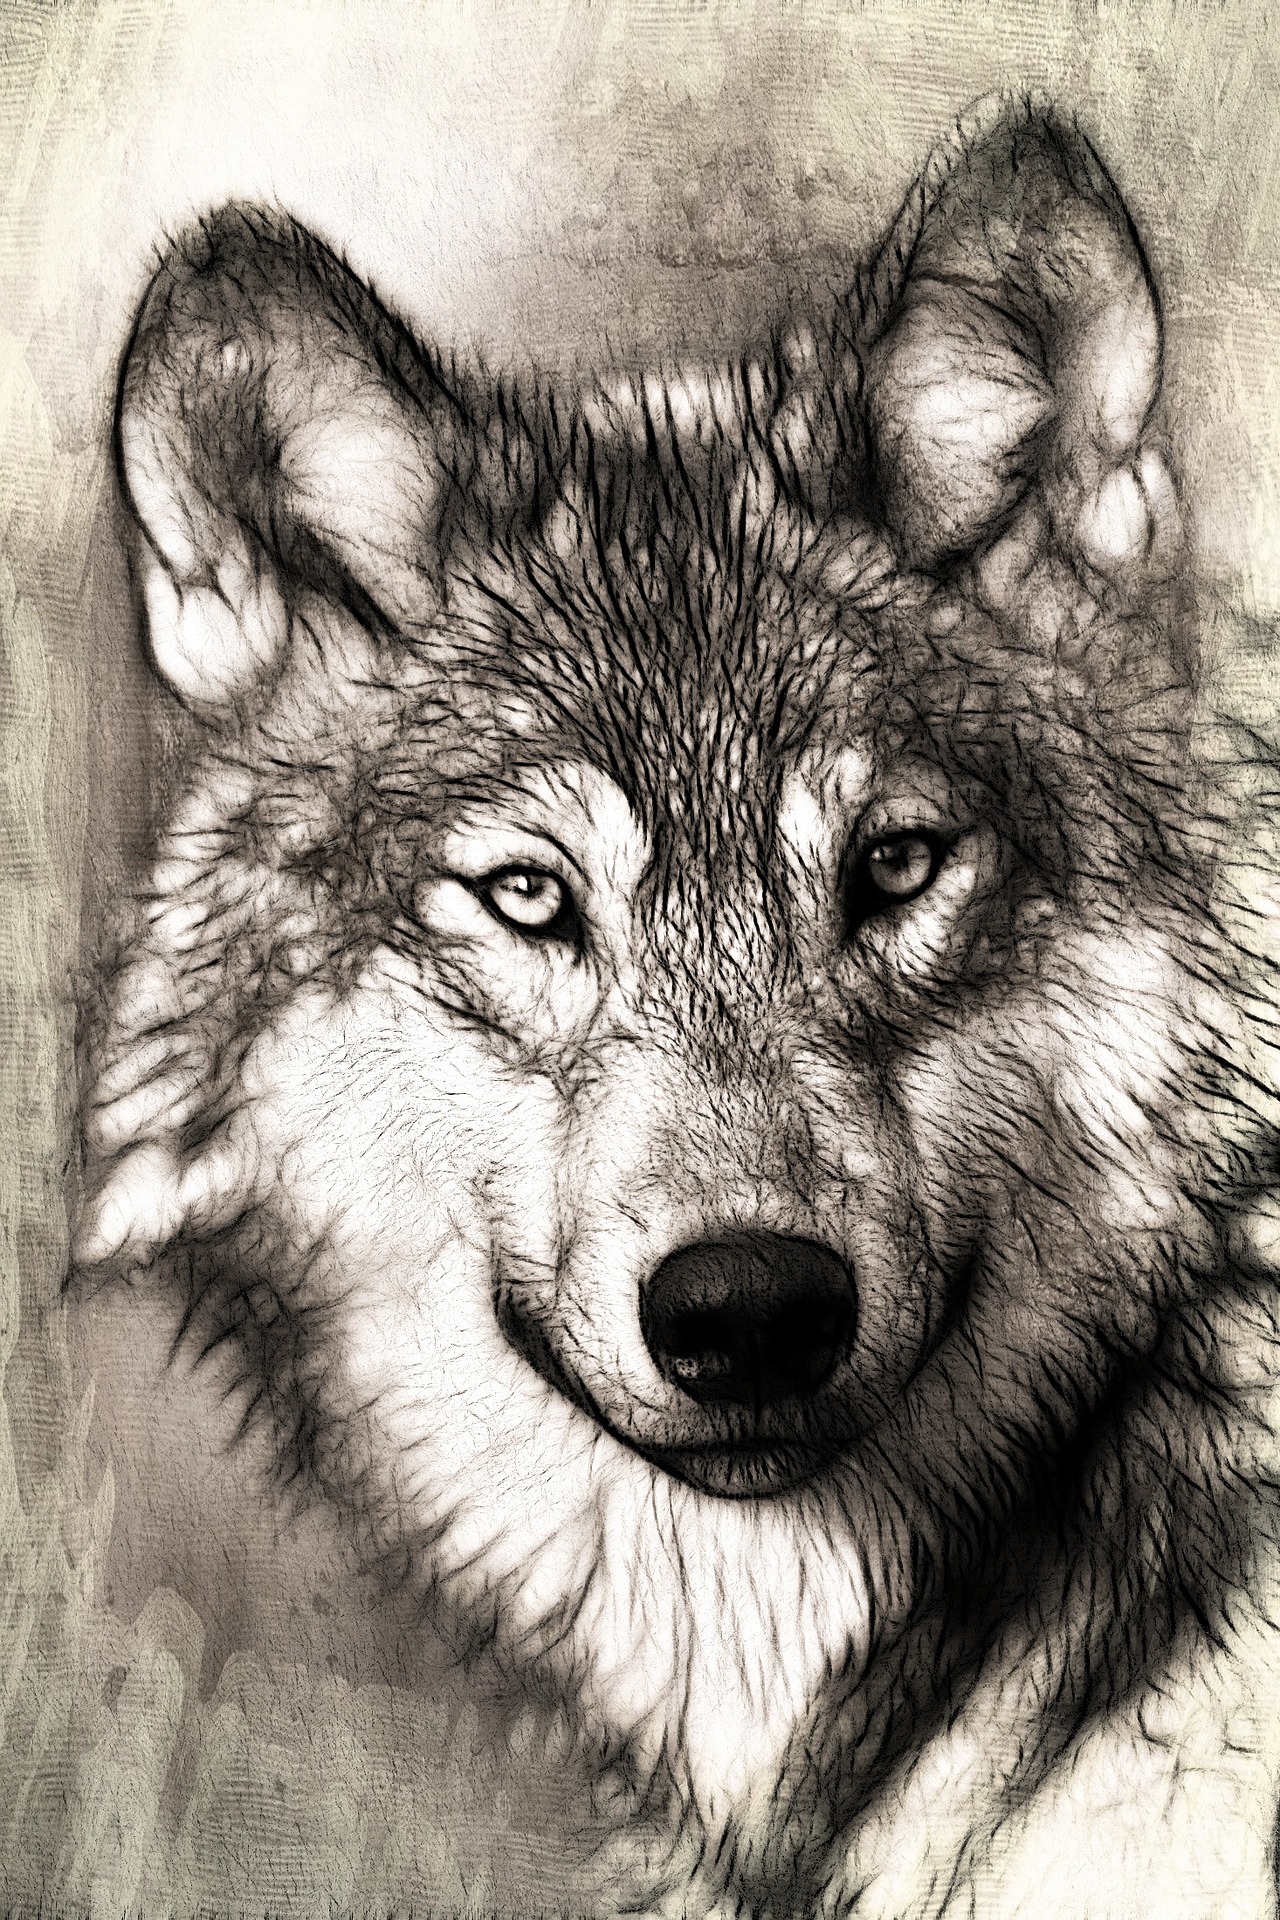 하얀 늑대와 검은 늑대 이야기 image 1